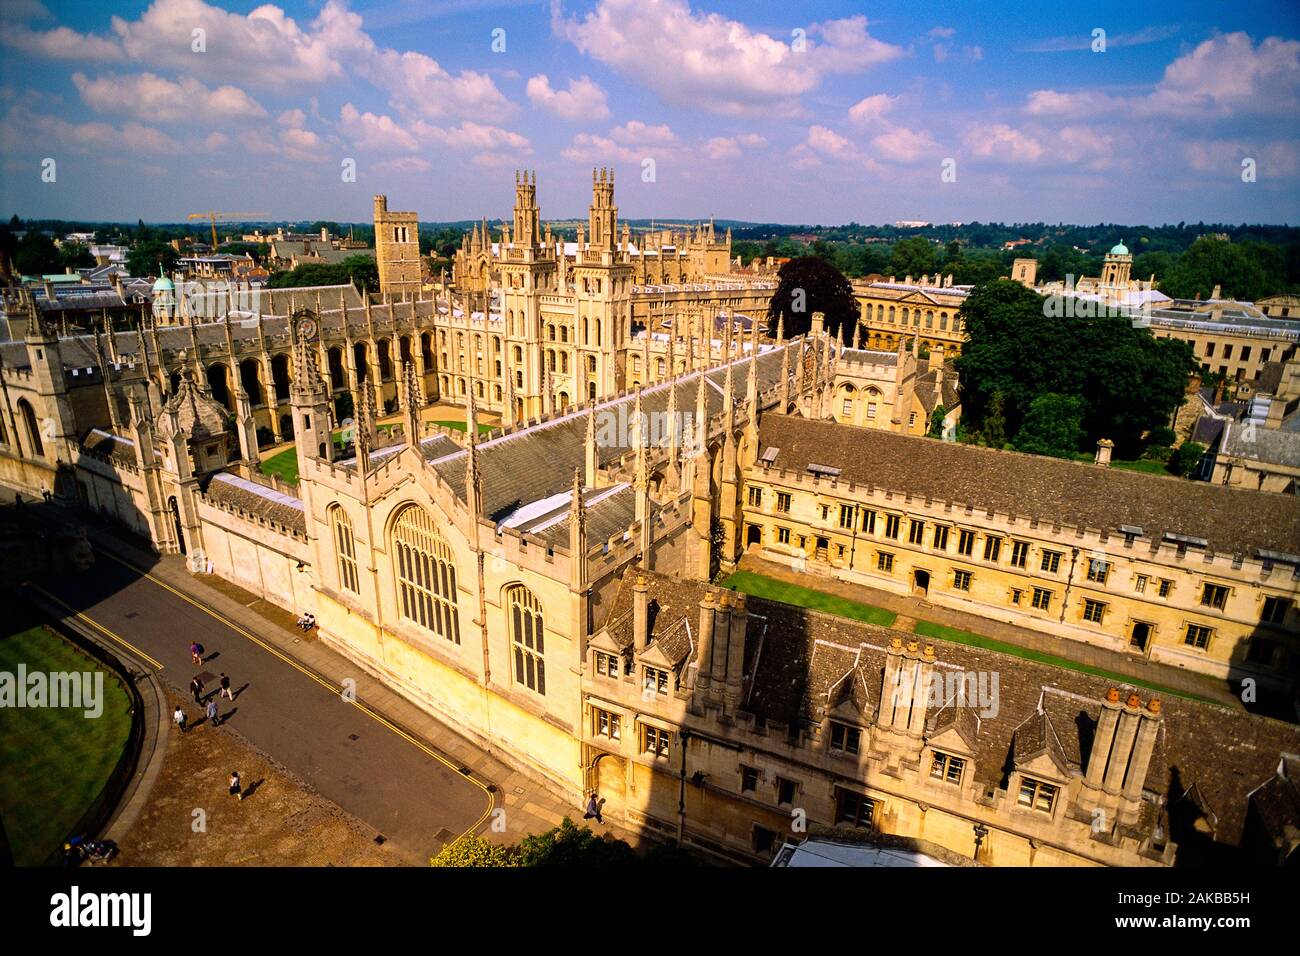 Vue aérienne de l'All Souls College, Oxford University, Oxford, England, UK Banque D'Images